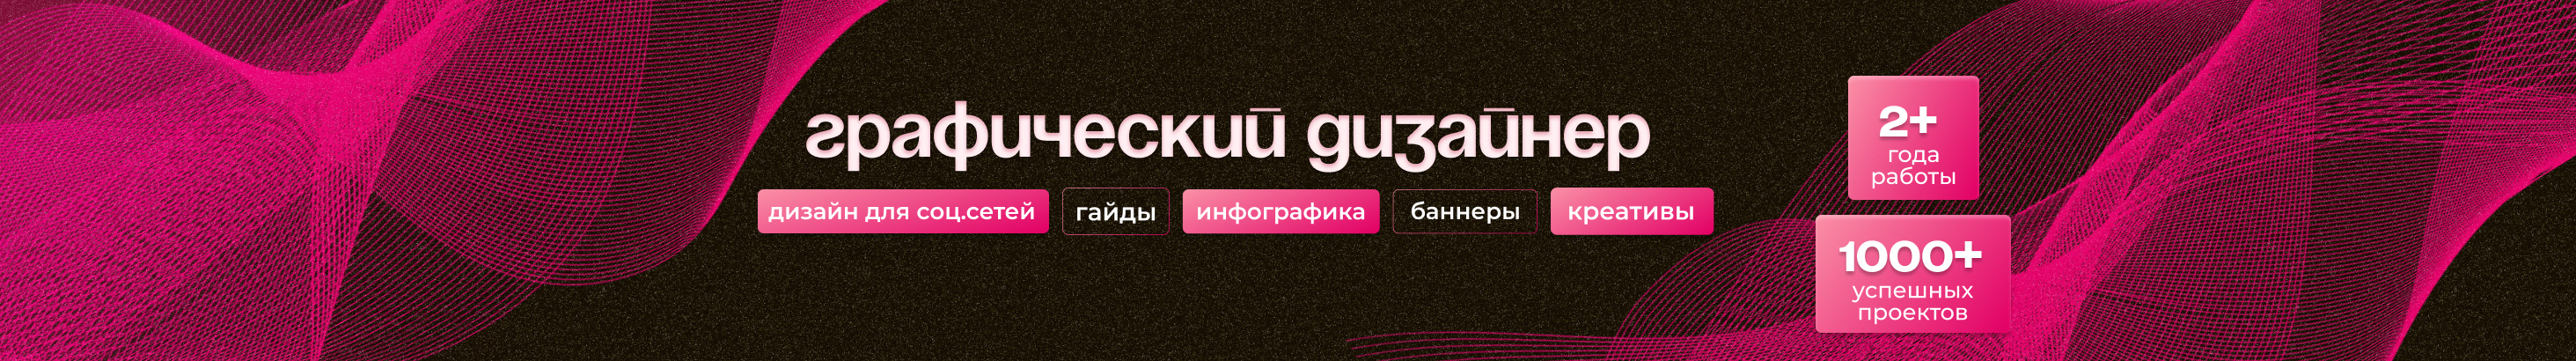 Banner de perfil de Aleksandra Designer